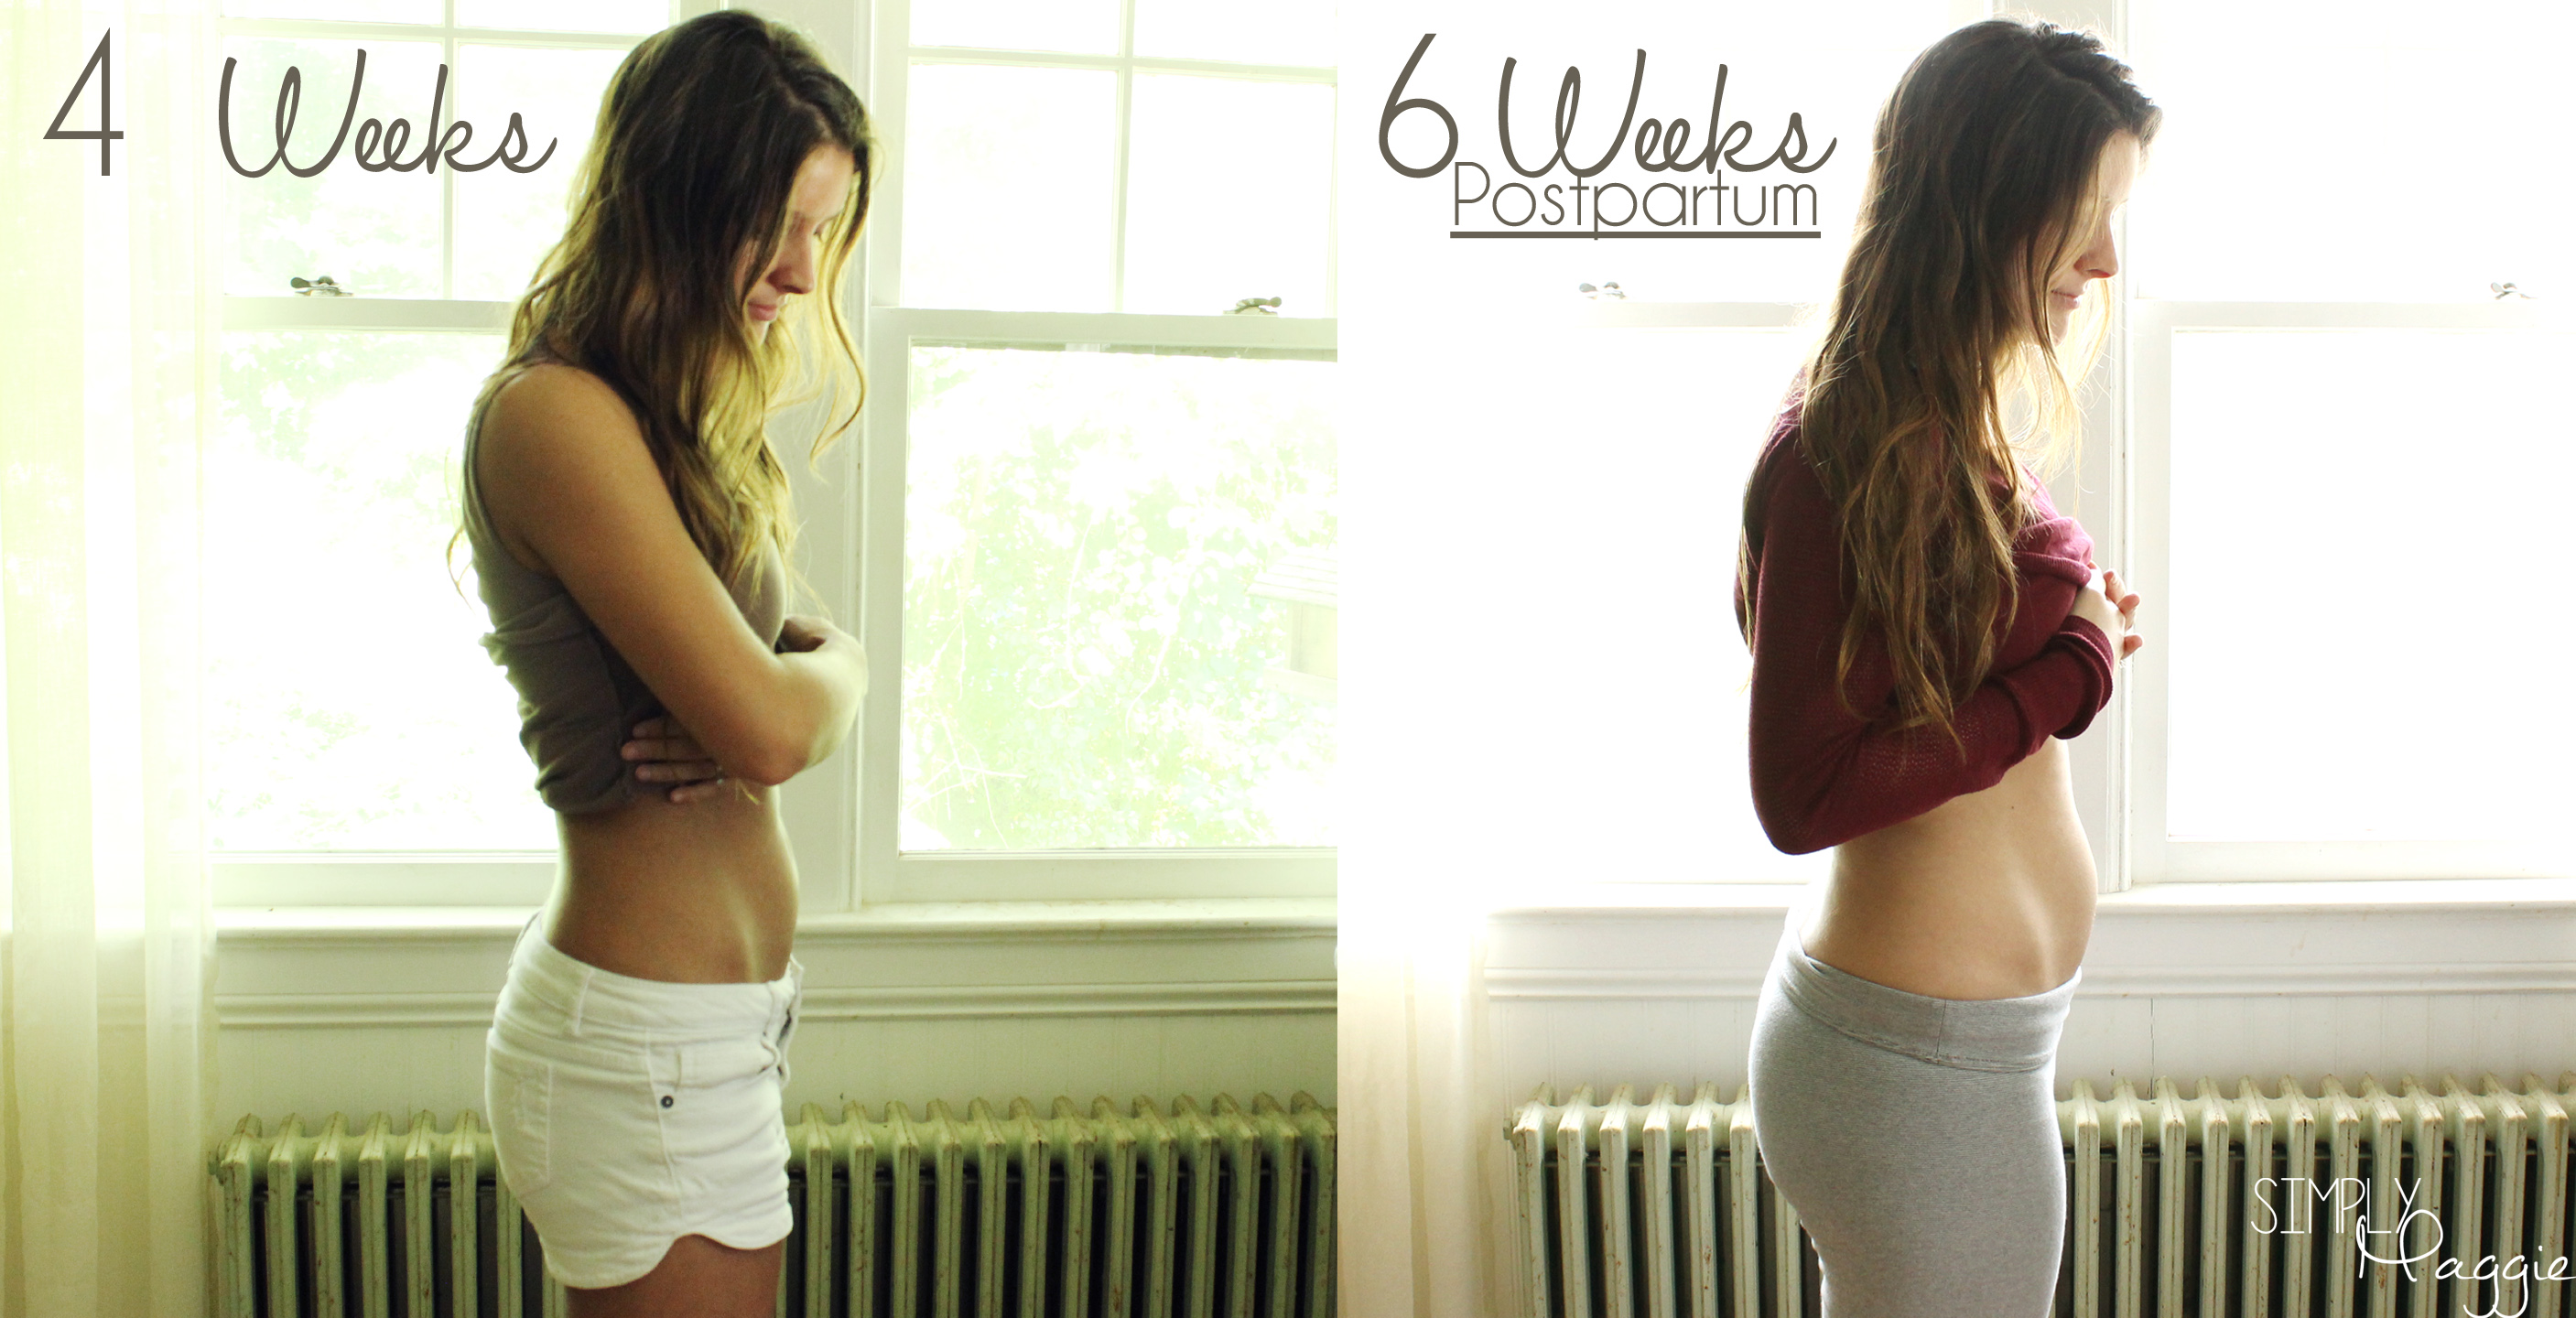 6 Week Postpartum Update | SimplyMaggie.com